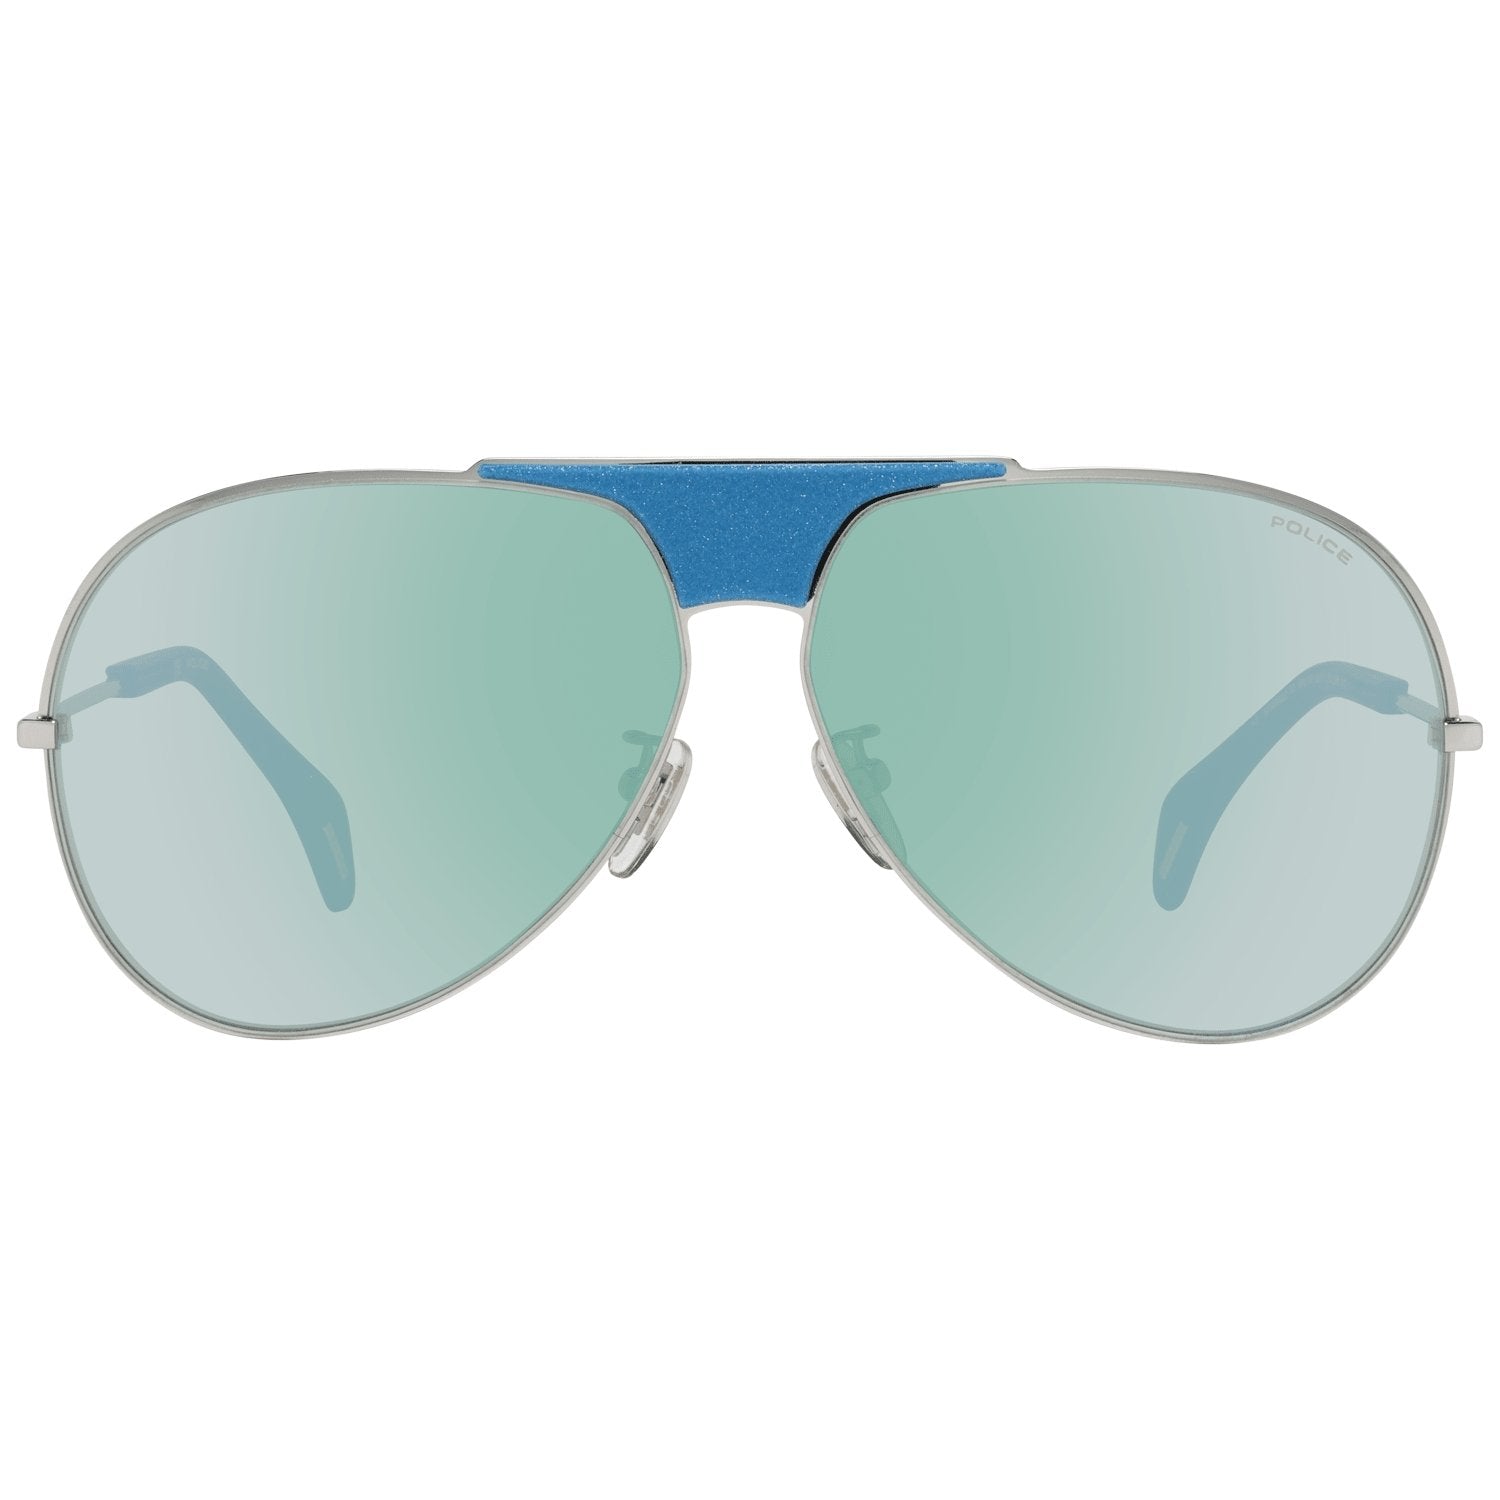 Police Blue Sunglasses for Woman - Fizigo